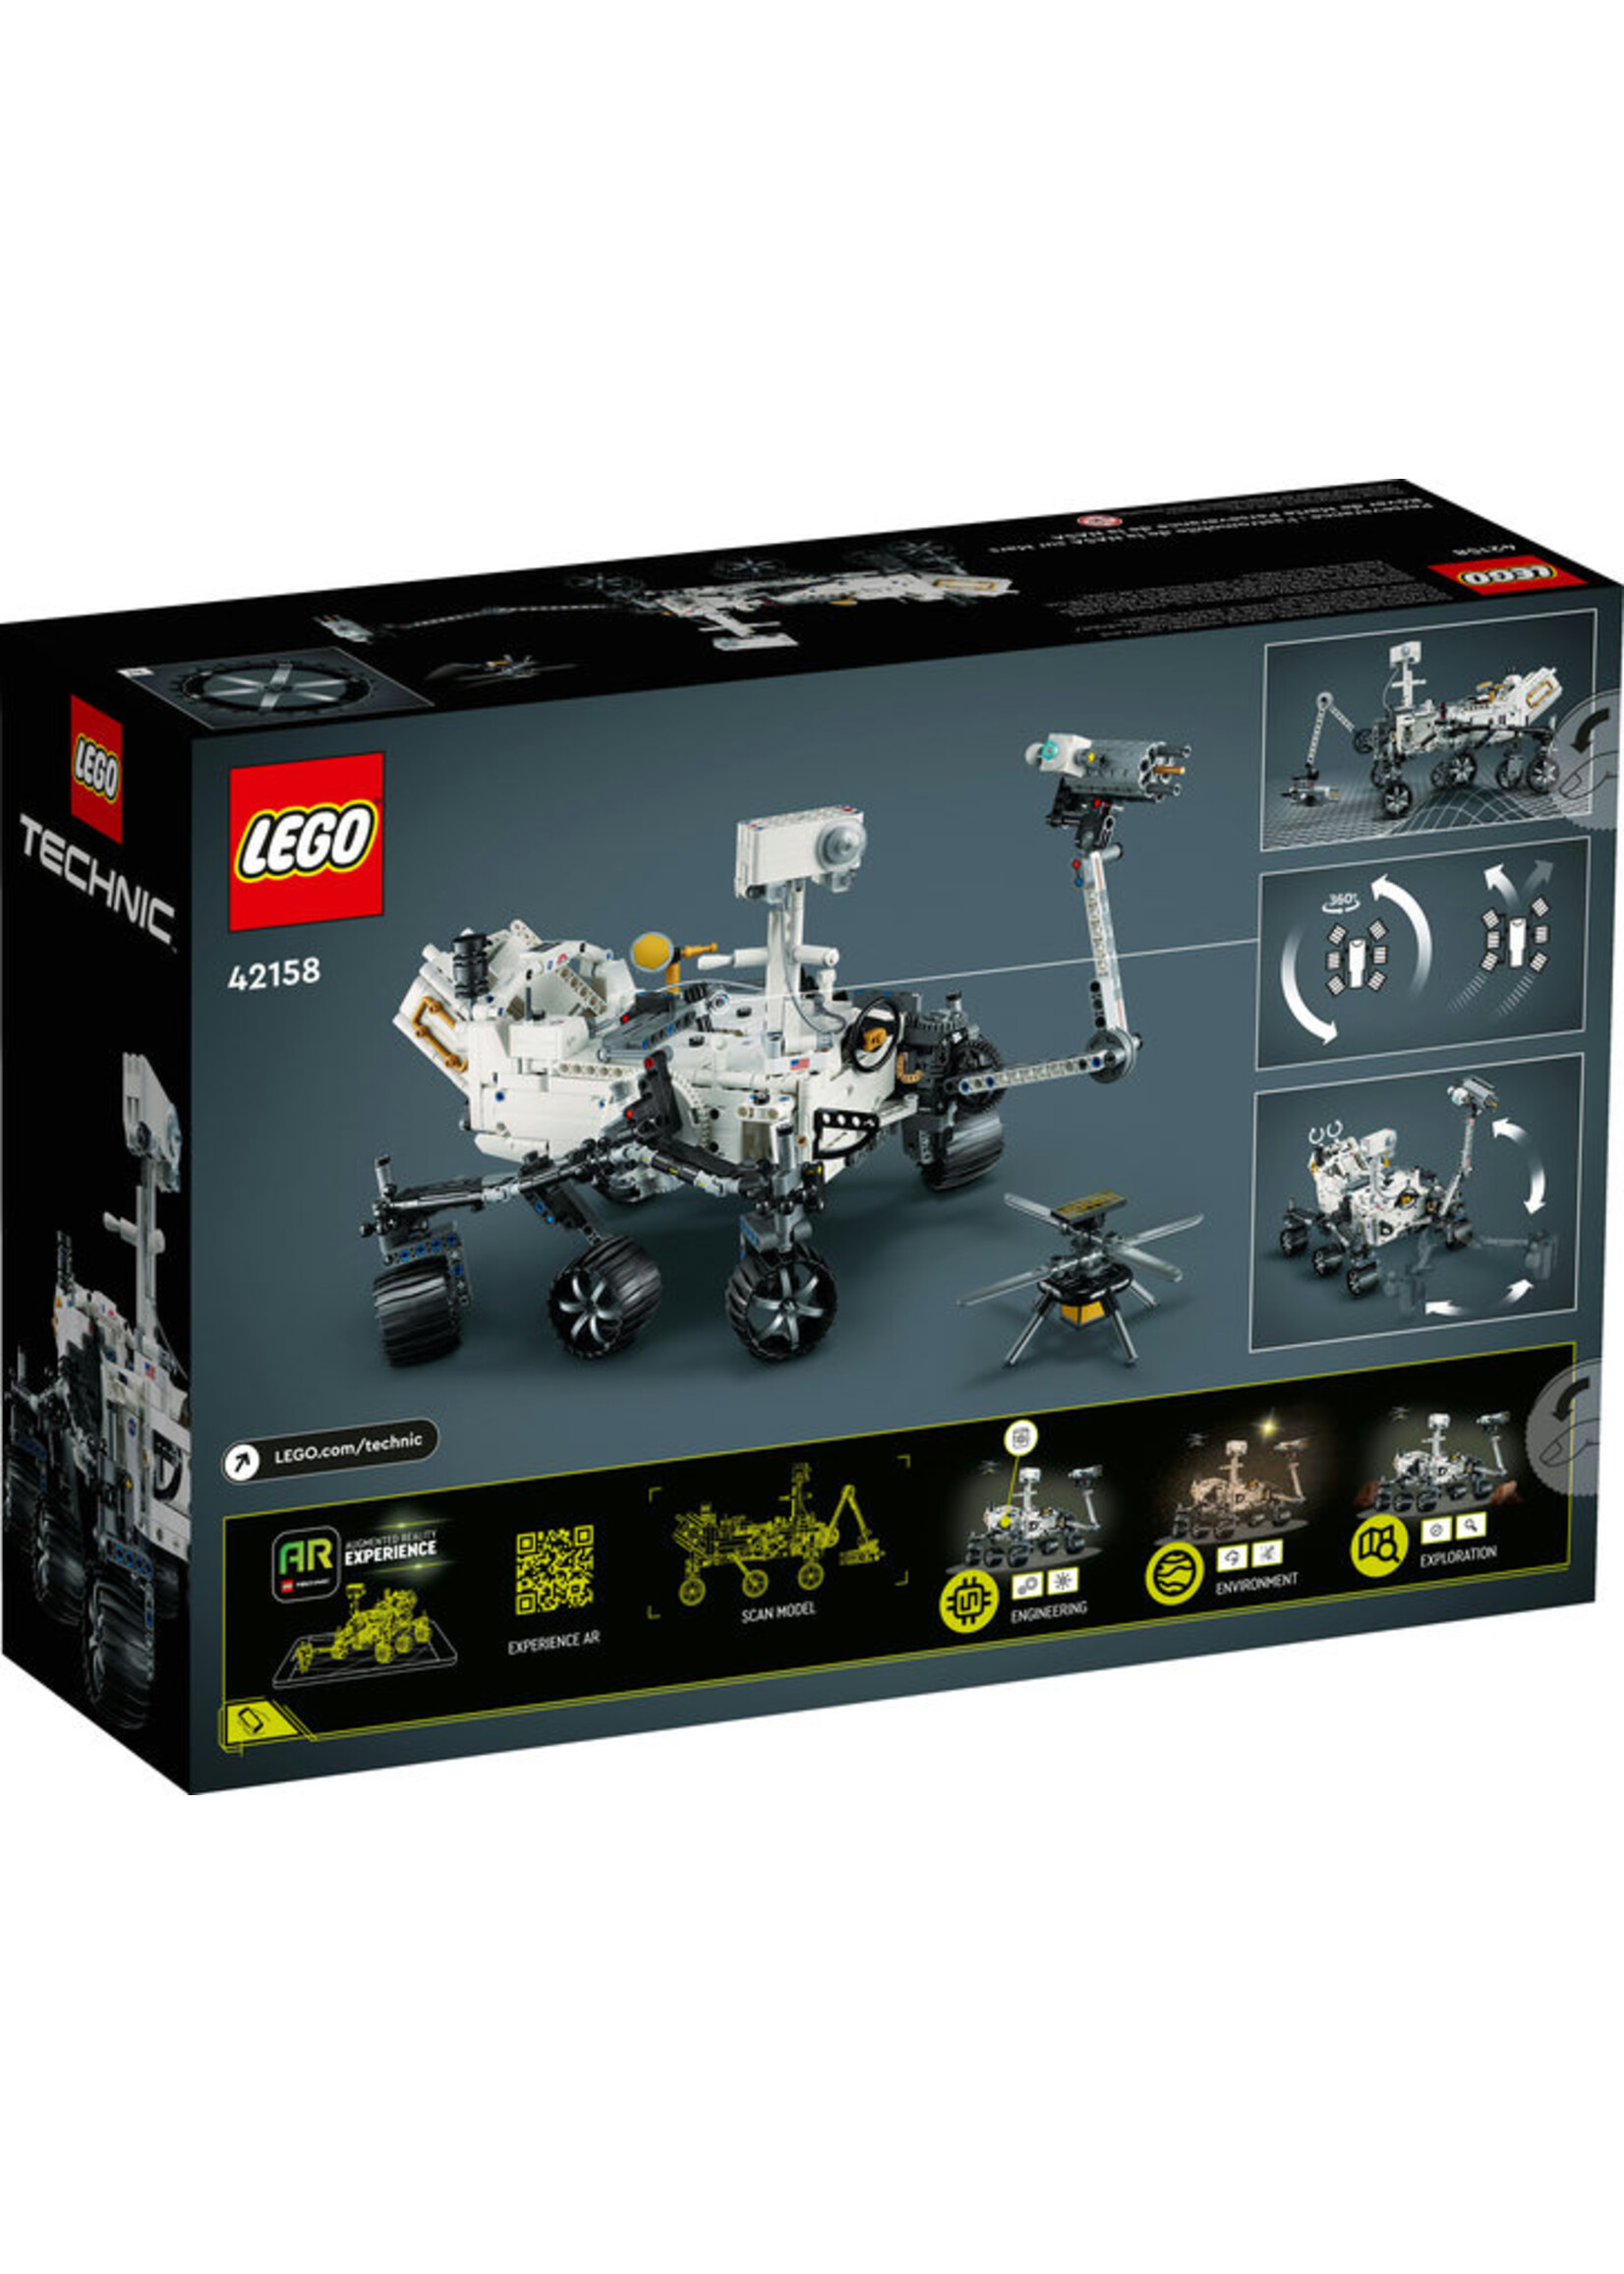 LEGO 42158 - NASA Mars Rover Perseverance